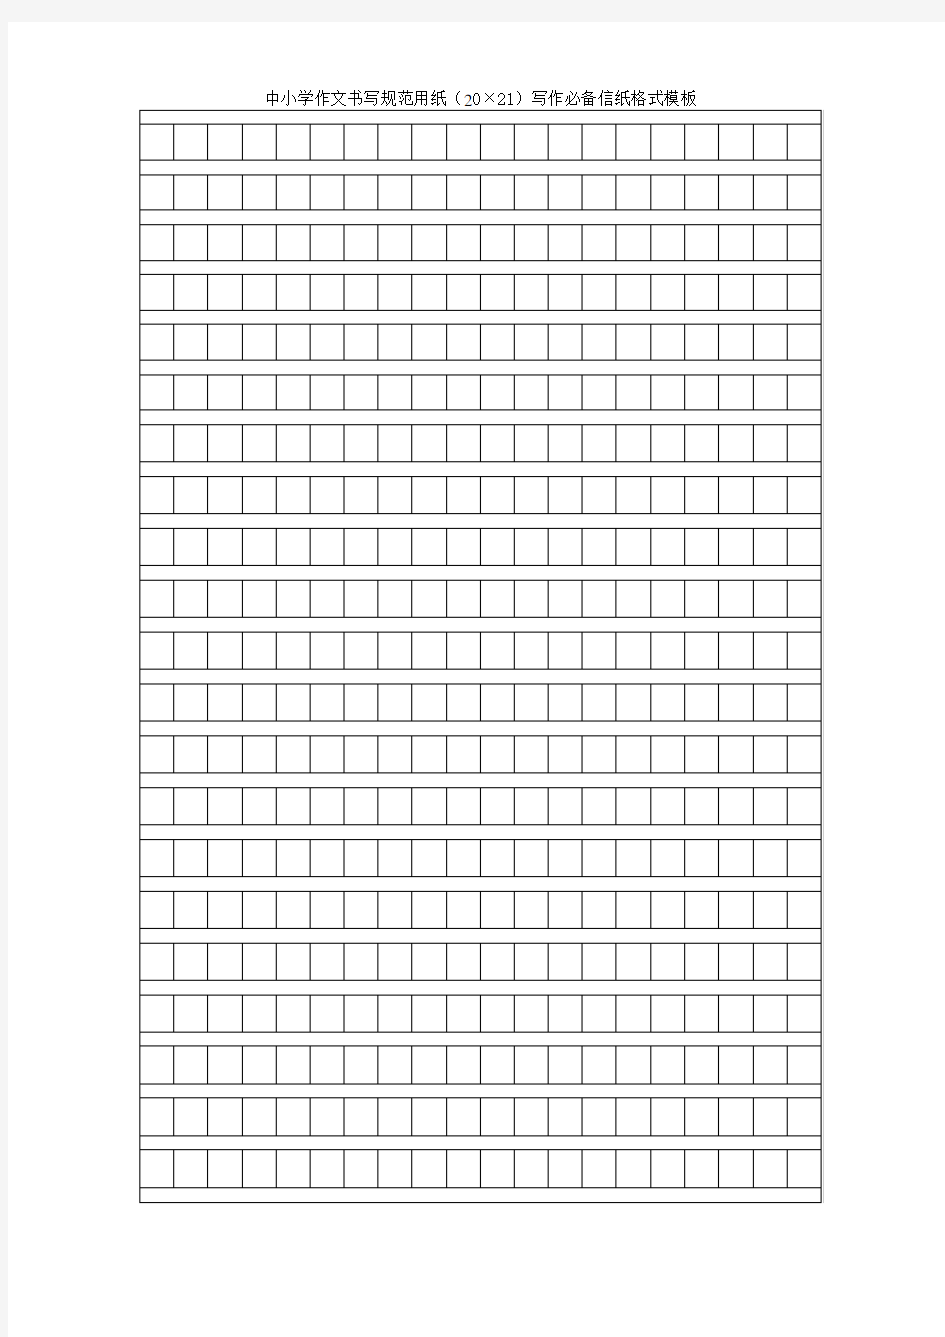 新版正式书信纸 中小学作文书写规范用纸(20×21)写作必备信纸格式模板